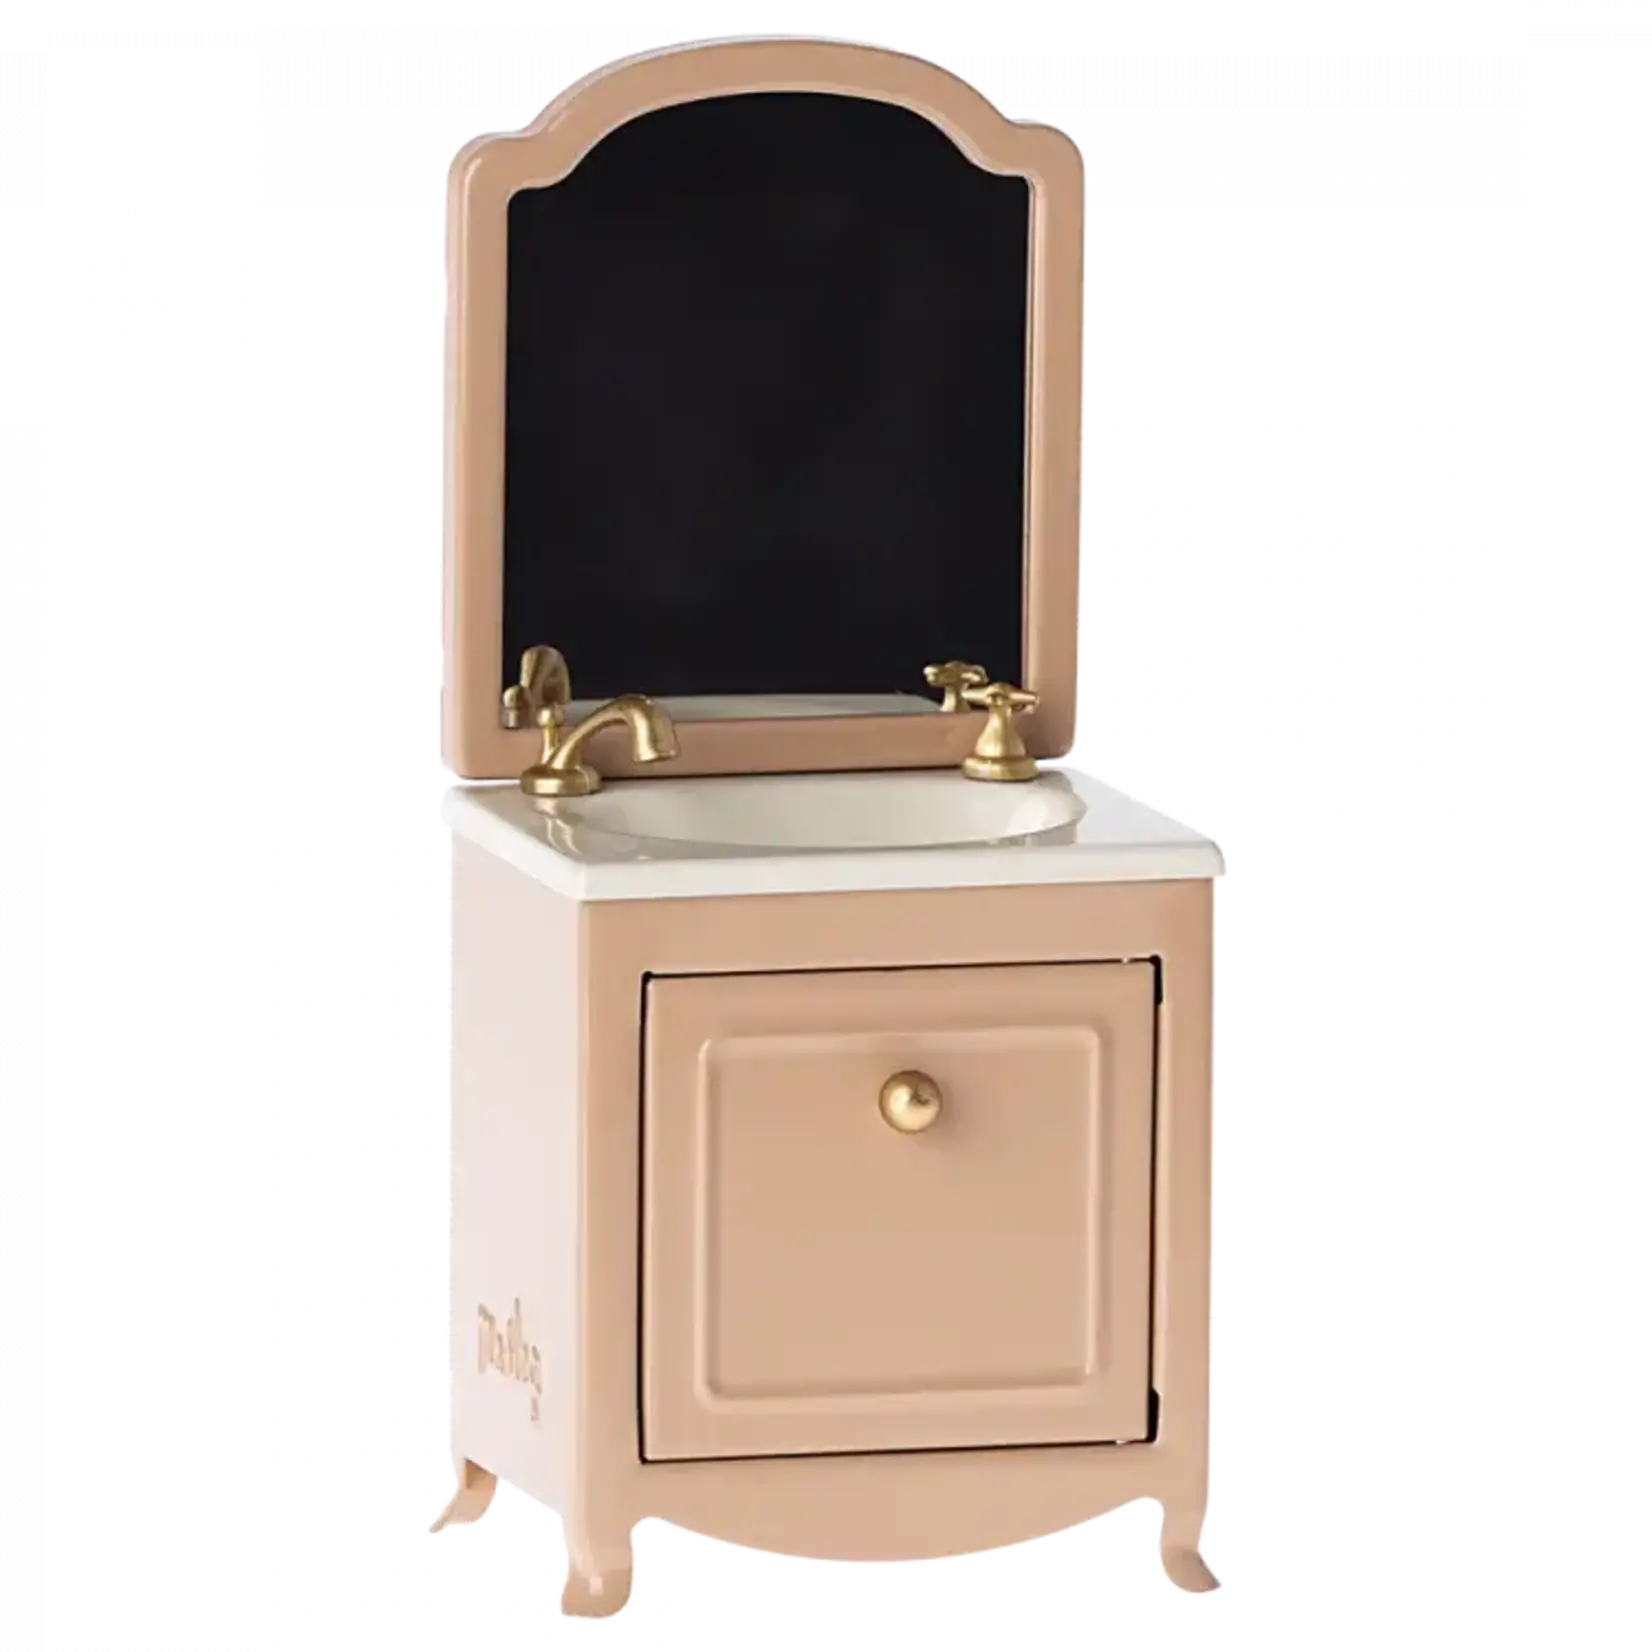 Maileg USA Sink Dresser with Mirror, Mouse - Dark powder